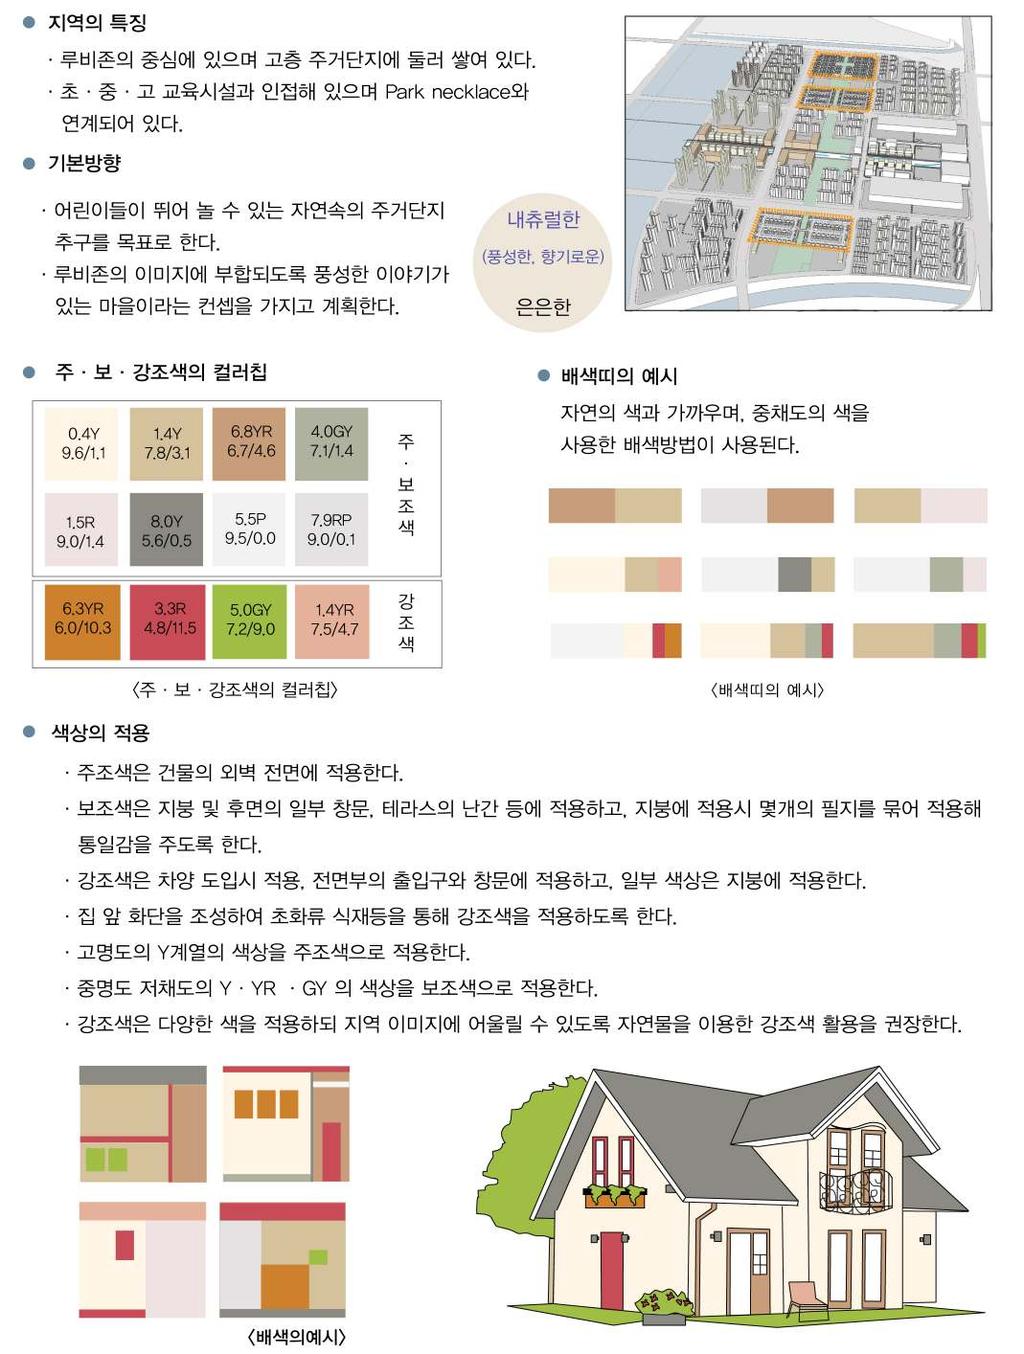 3 건축물용도별색채디자인상세계획 Ruby 단독주택 < 그림 6-21